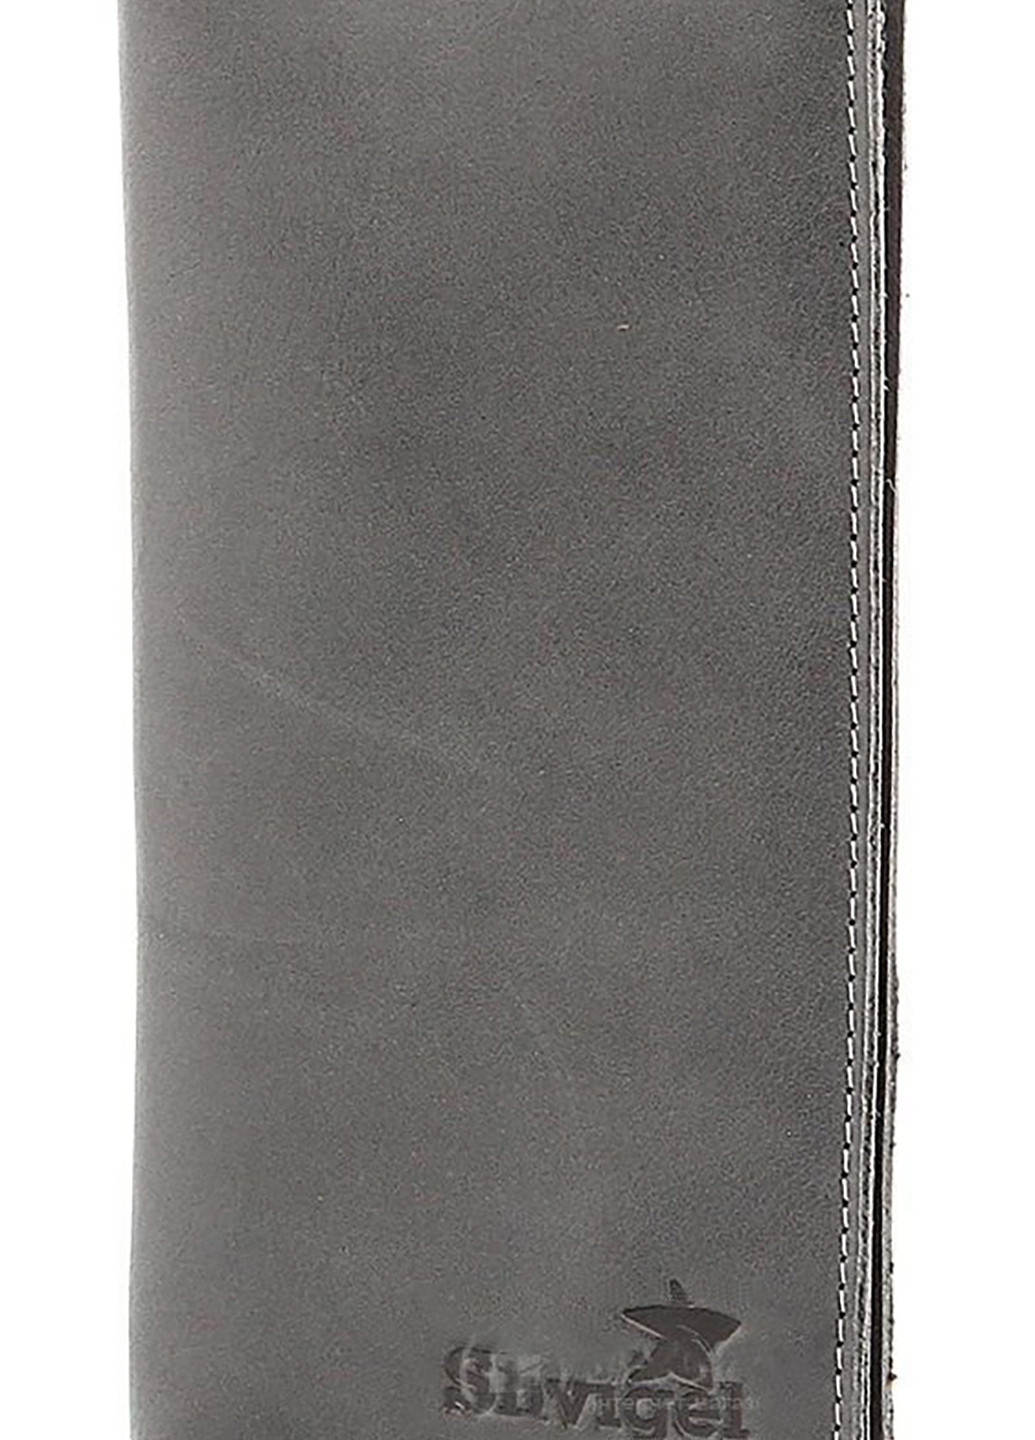 Мужской кожаный кошелек 9,5х13,5 см Shvigel (252129845)